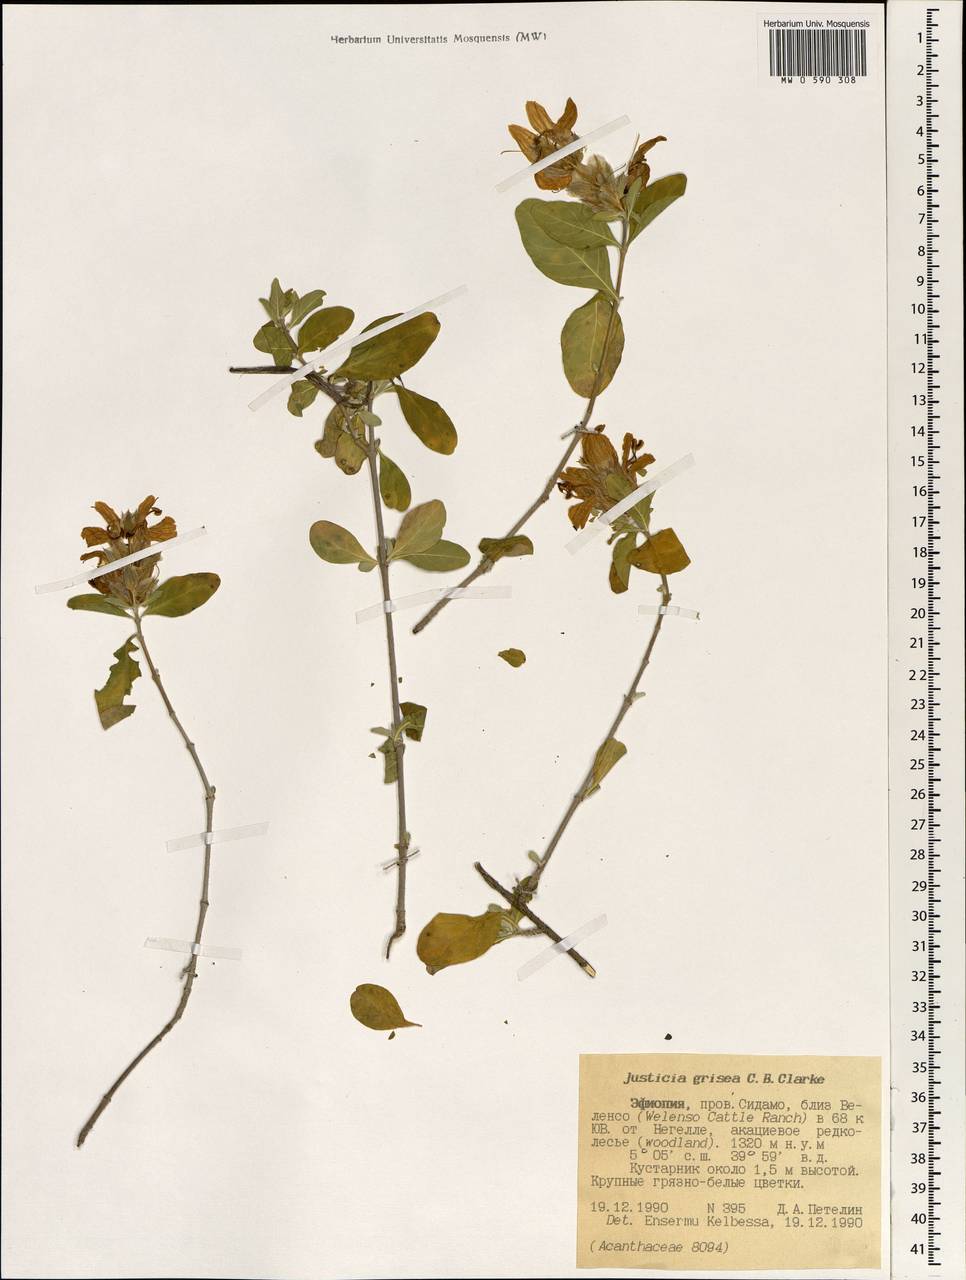 Duvernoia somalensis Lindau, Africa (AFR) (Ethiopia)